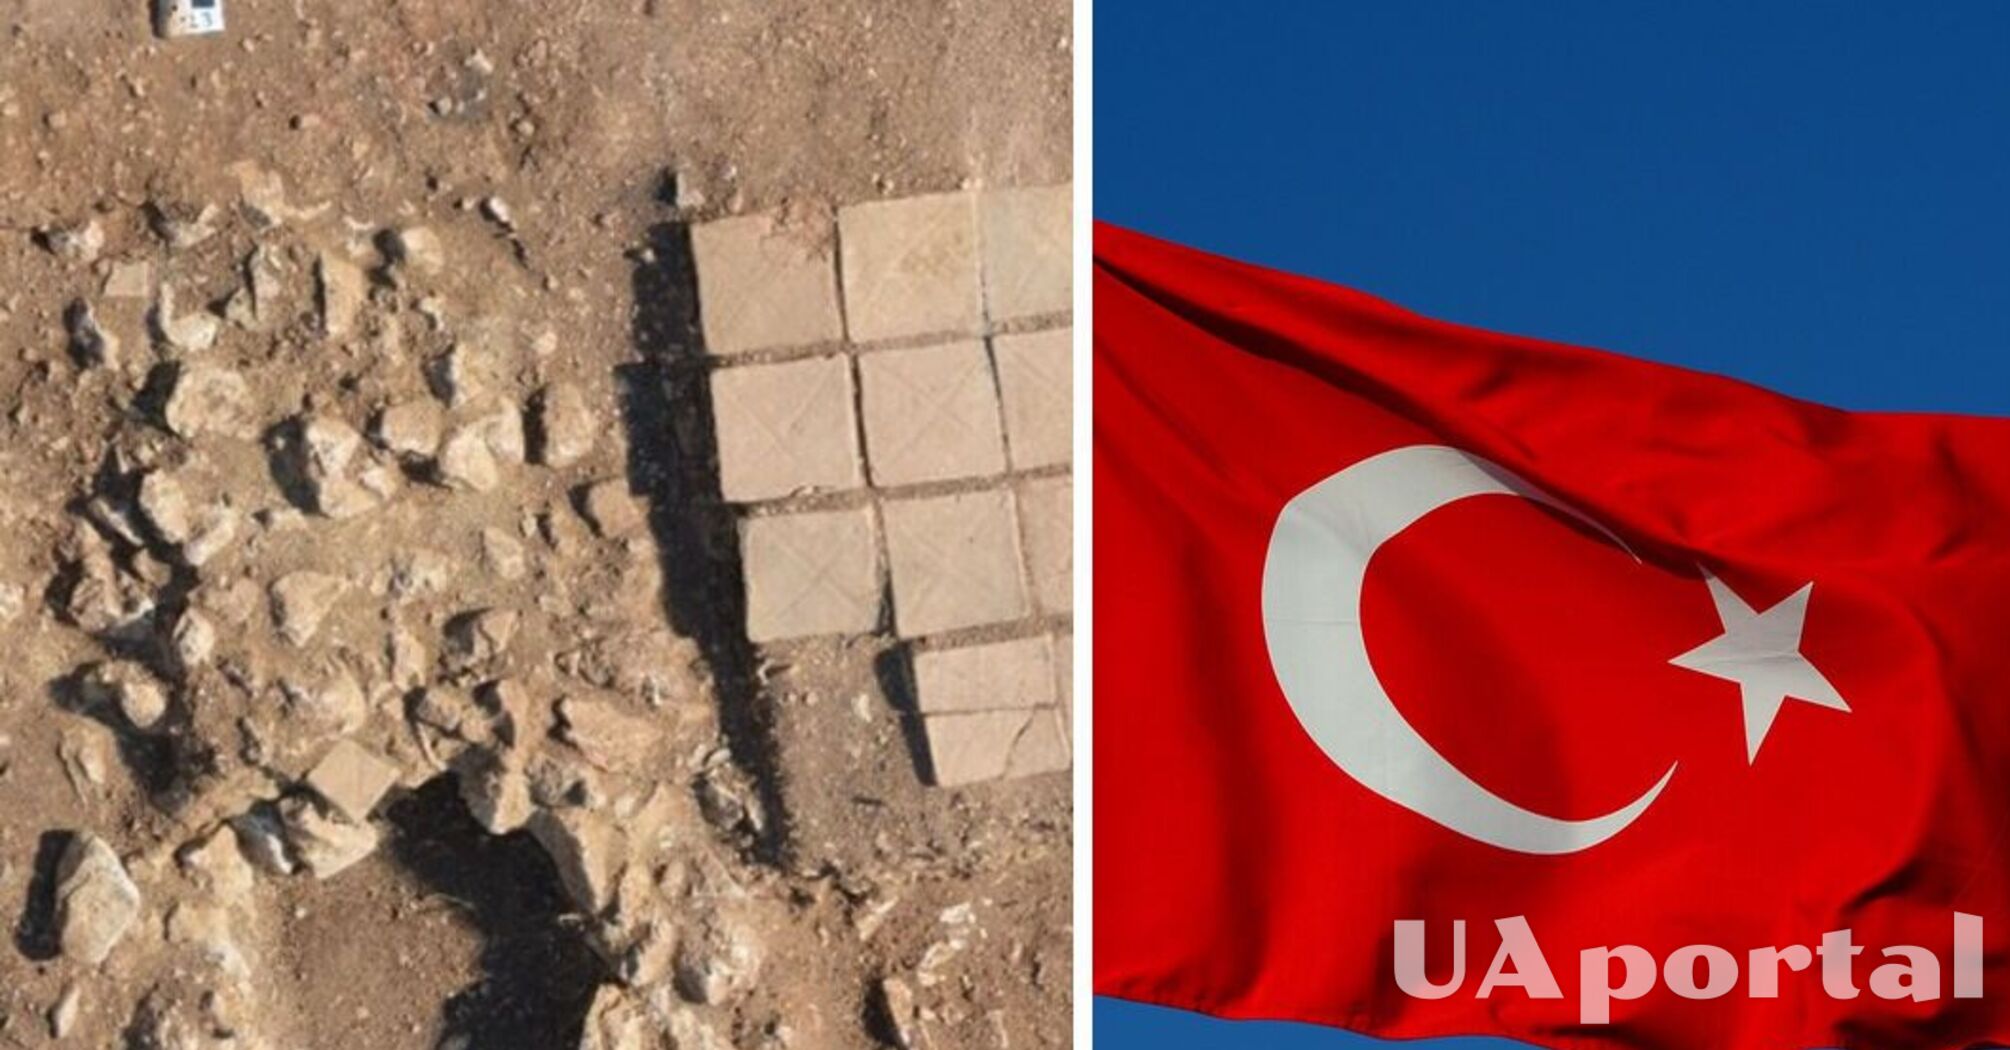 У Туреччині виявили гробницю римської доби, яку запечатали 'магічними' цвяхами (фото)